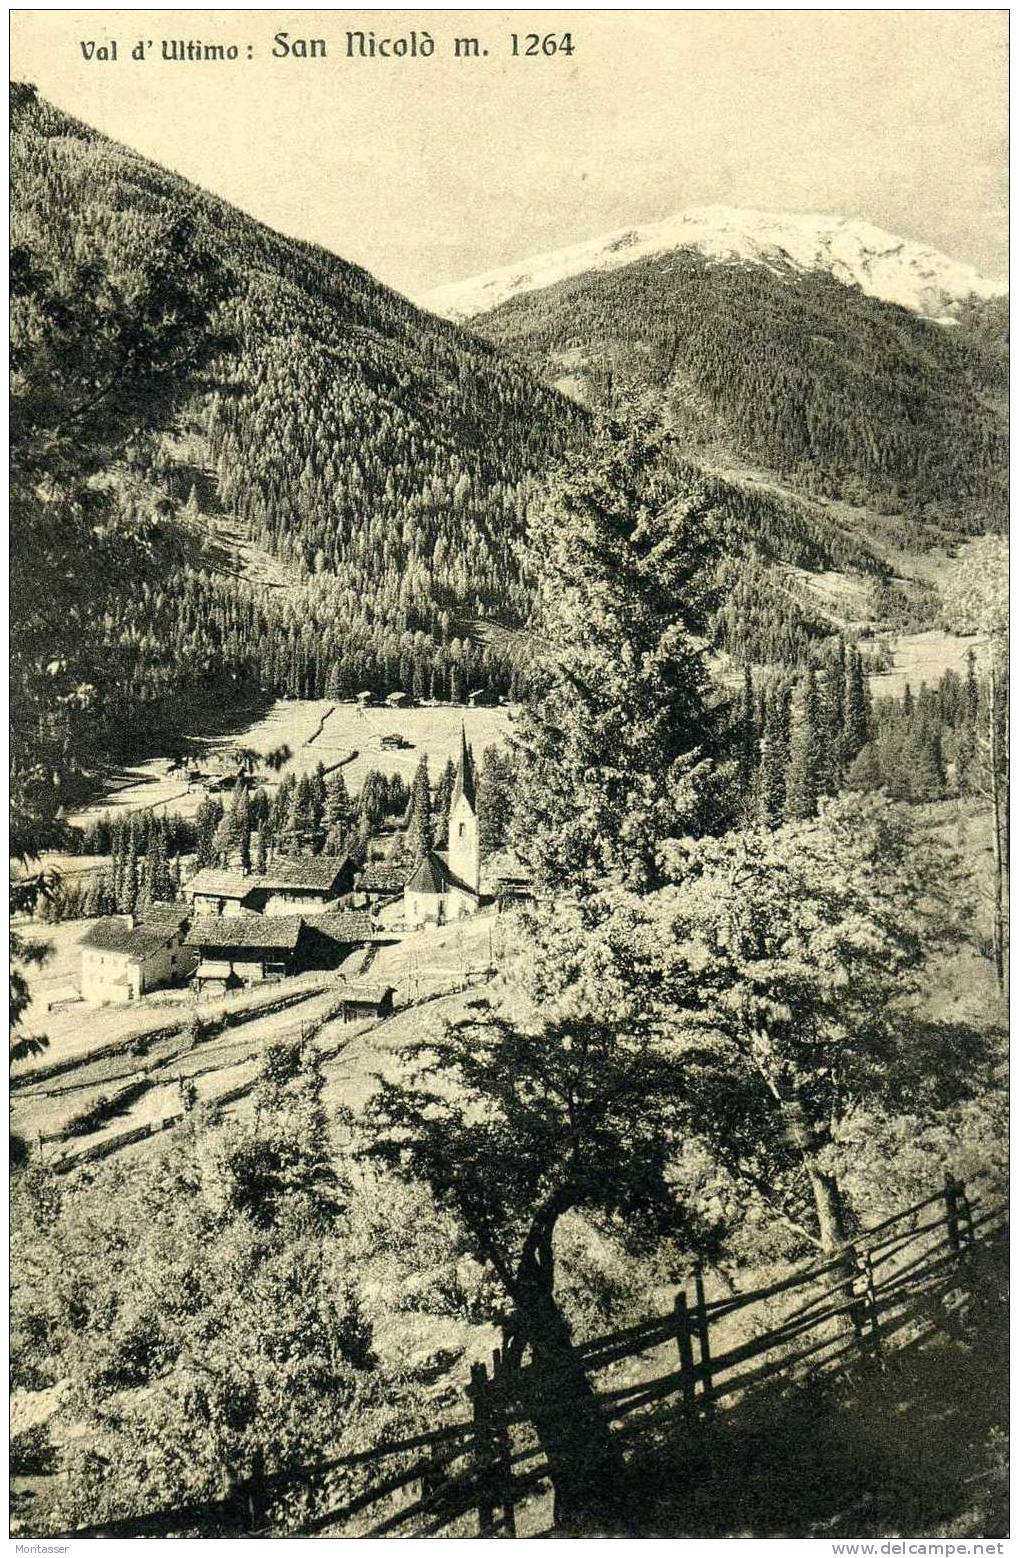 SAN NICOLO (Bolzano). Val D' Ultimo. Montagna. Non Vg. 1928. - Bolzano (Bozen)